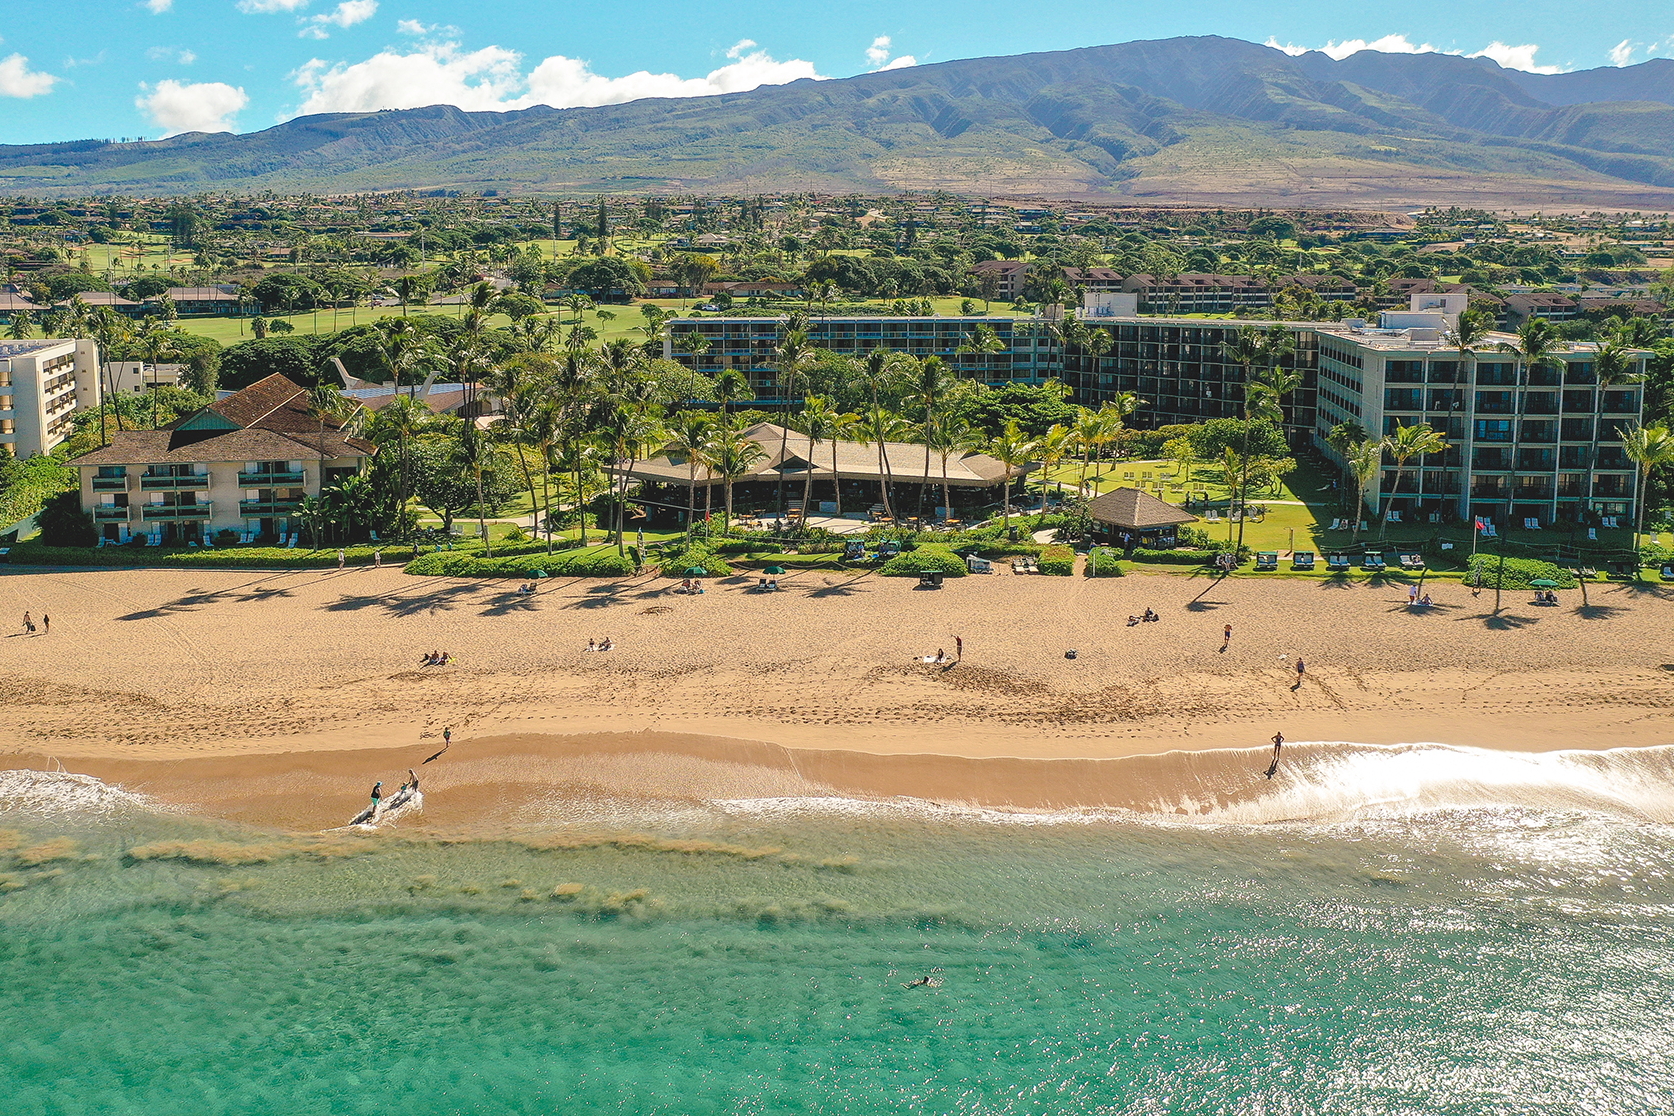 Kā‘anapali Beach Hotel on Maui island, Hawaii. Click to enlarge.